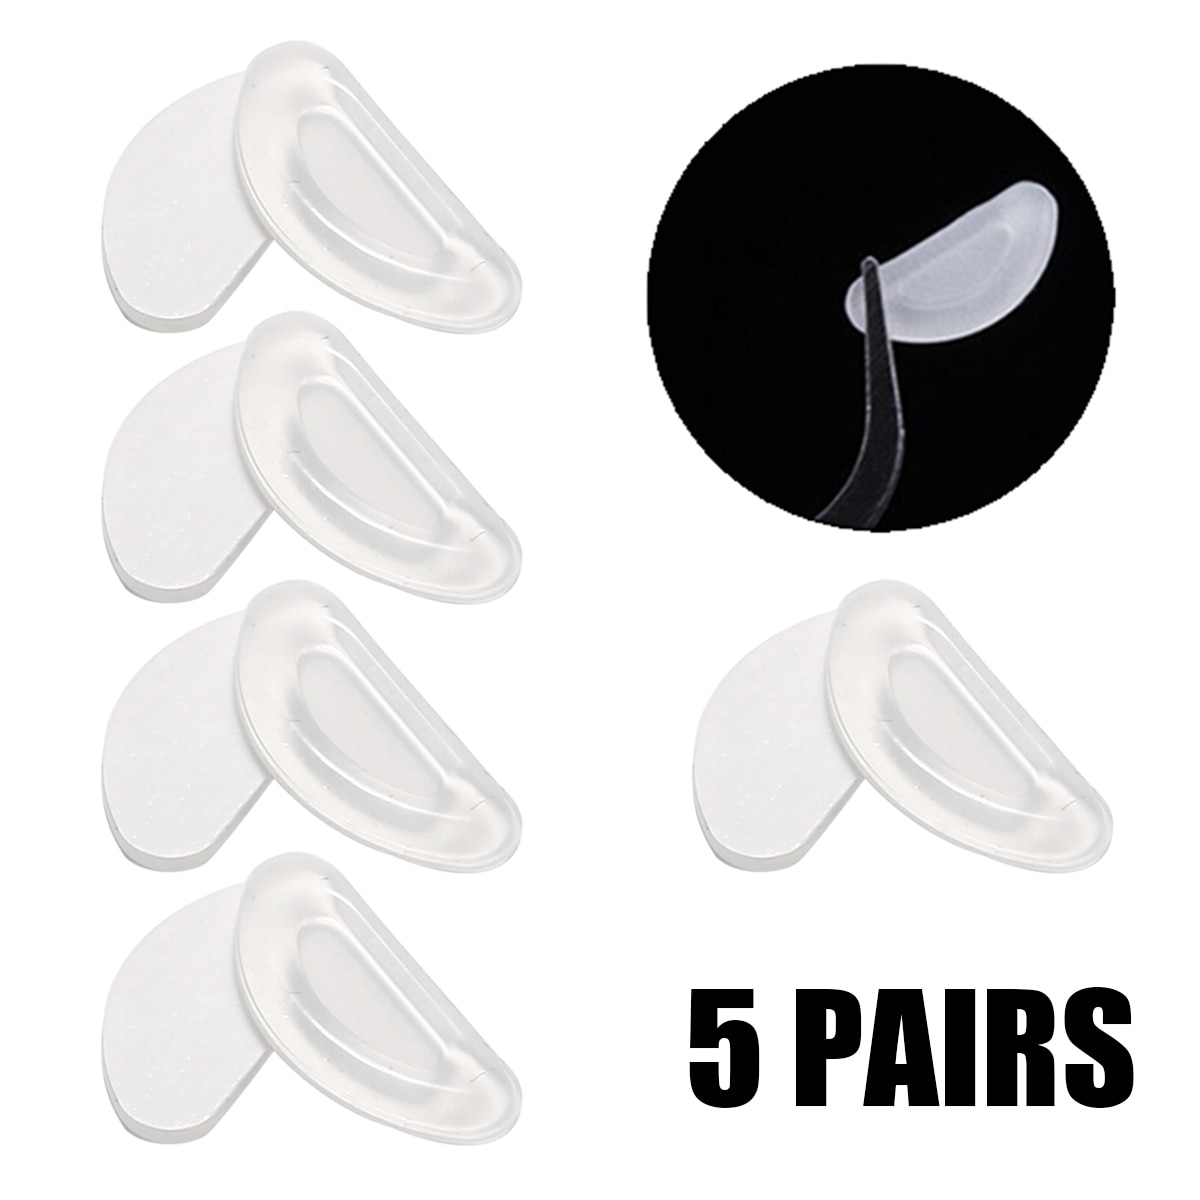 5 Paar Zachte Siliconen Neus Pads Anti-Slip Neus Pads Geschikt Voor Bril Brillen Zonnebril Multi-Toepassingen Bril accessoires